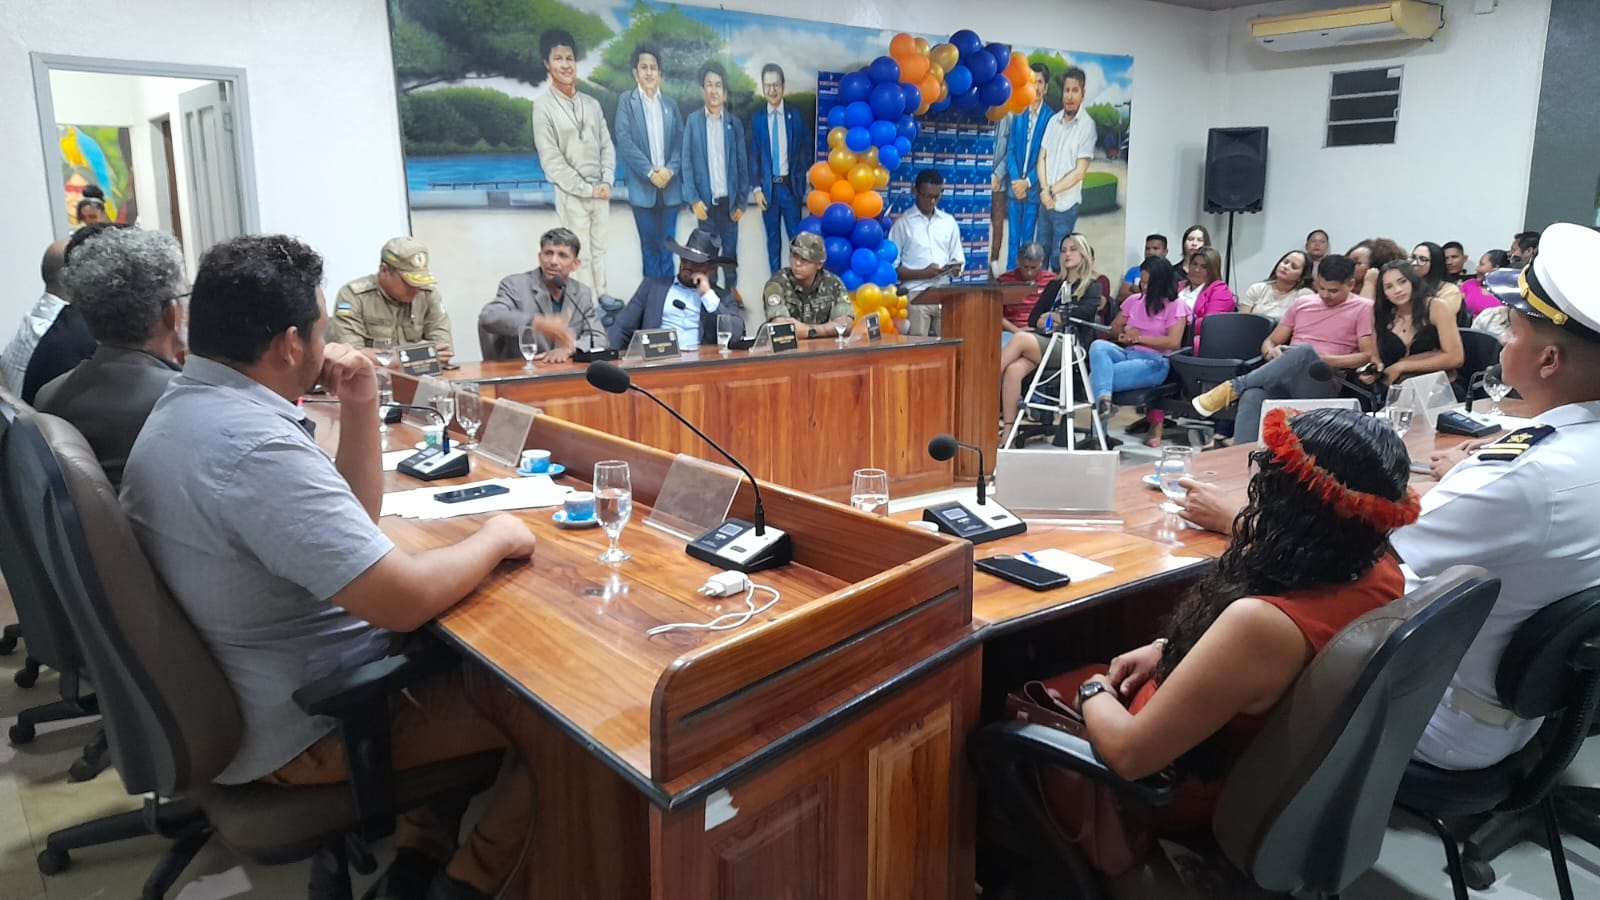 Você está visualizando atualmente Câmara Municipal de Oiapoque realiza sessão solene alusiva aos 10 anos de implantação do Campus Oiapoque – UNIFAP